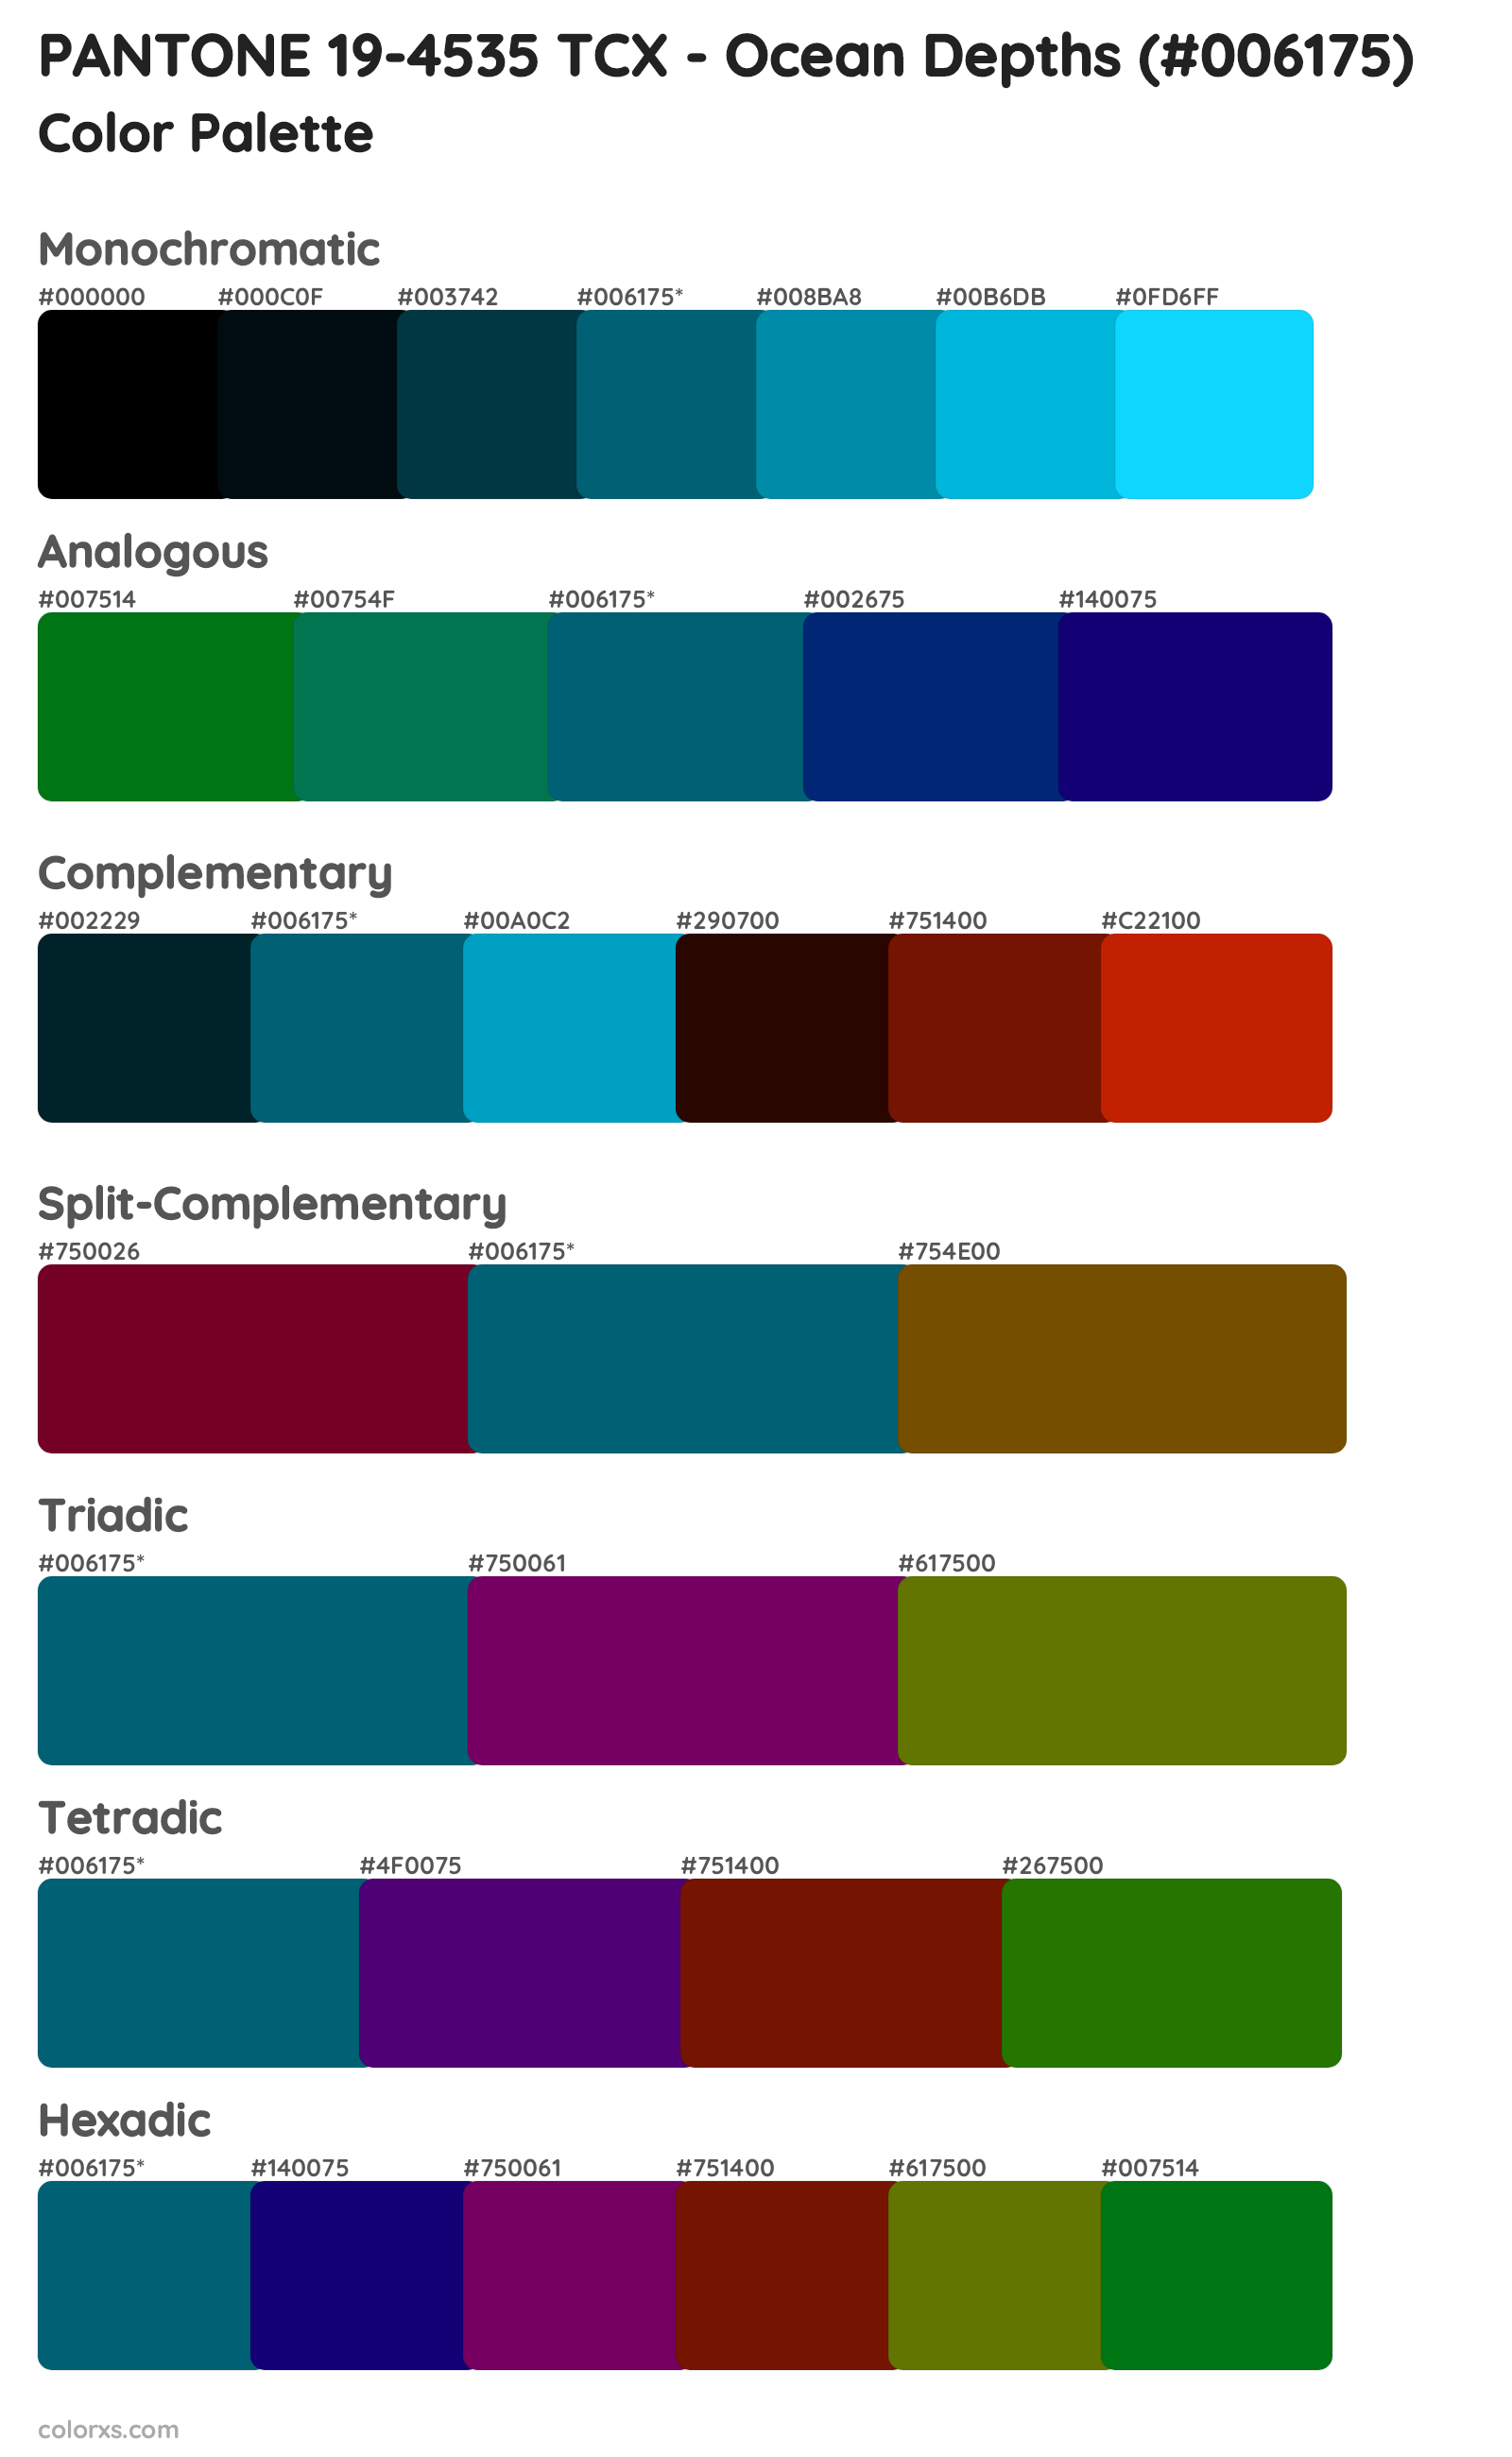 PANTONE 19-4535 TCX - Ocean Depths Color Scheme Palettes